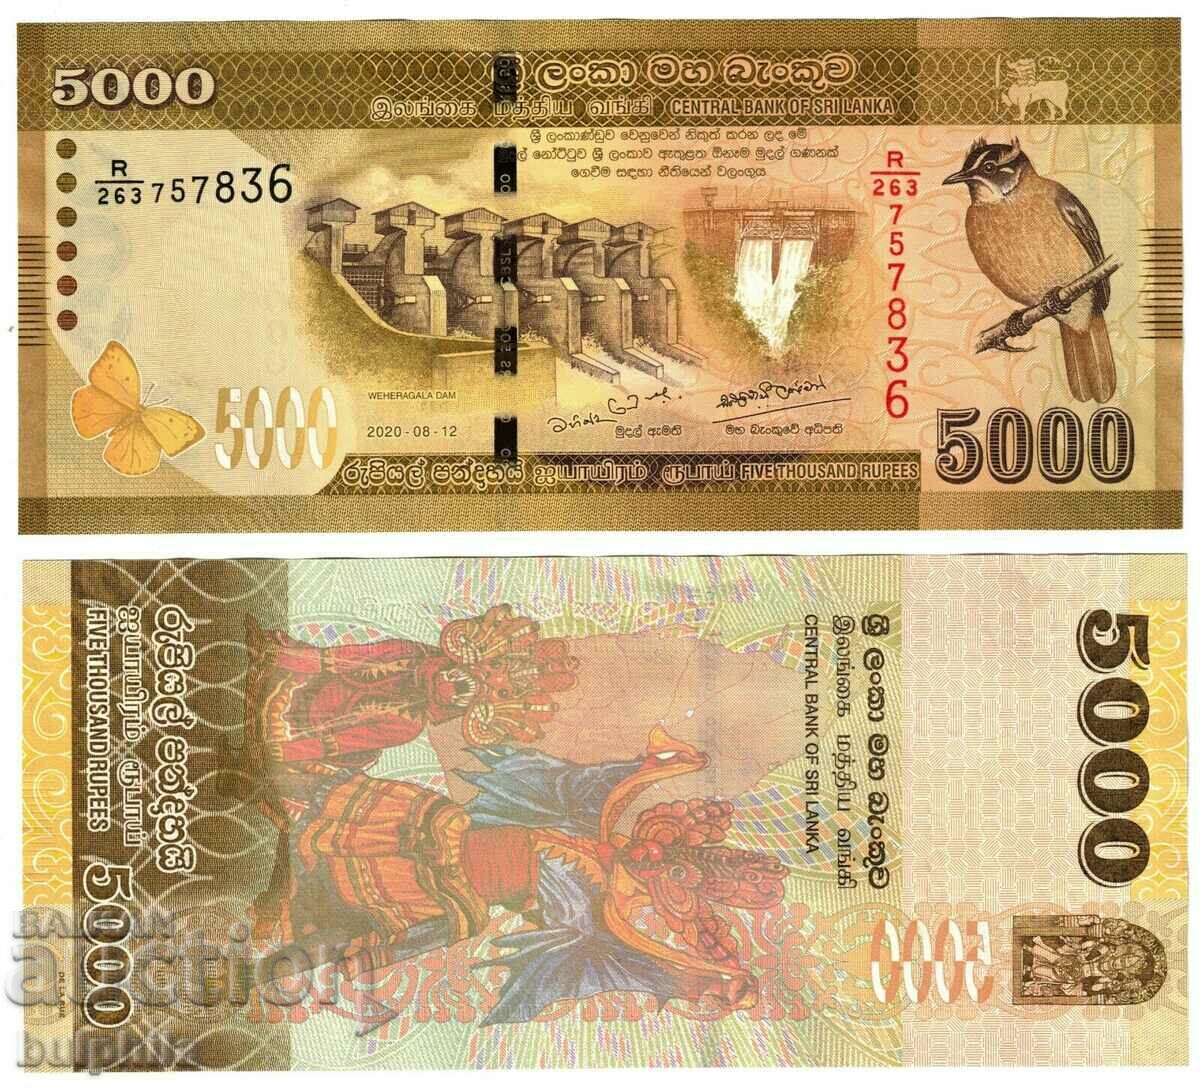 Sri Lanka 5000 Rupees 2020 Unused